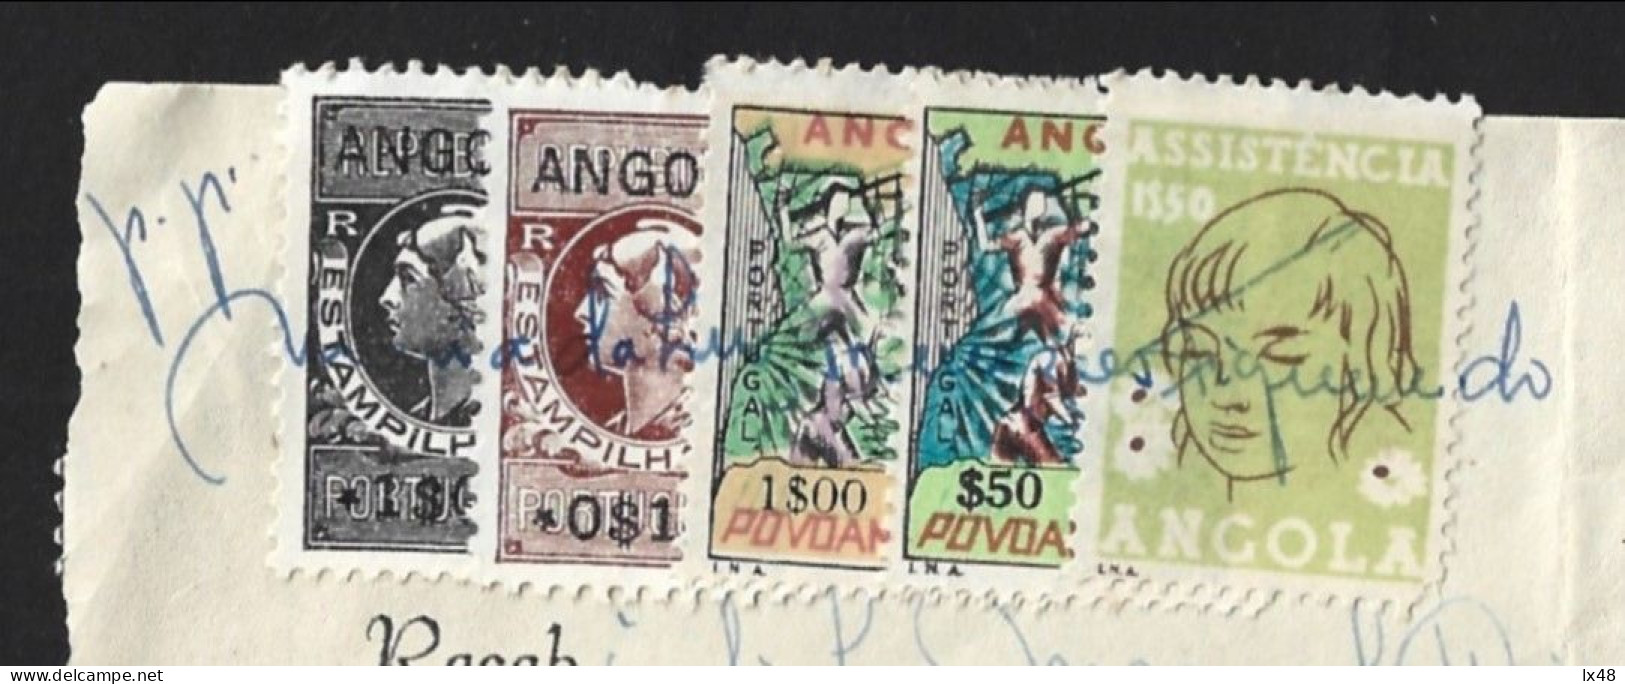 Recibo De Angola 1971 Com Stamps Assistência E Povoamento Utilizados Como Estampilha Fiscal. Angola Receipt From 1971 Wi - Covers & Documents